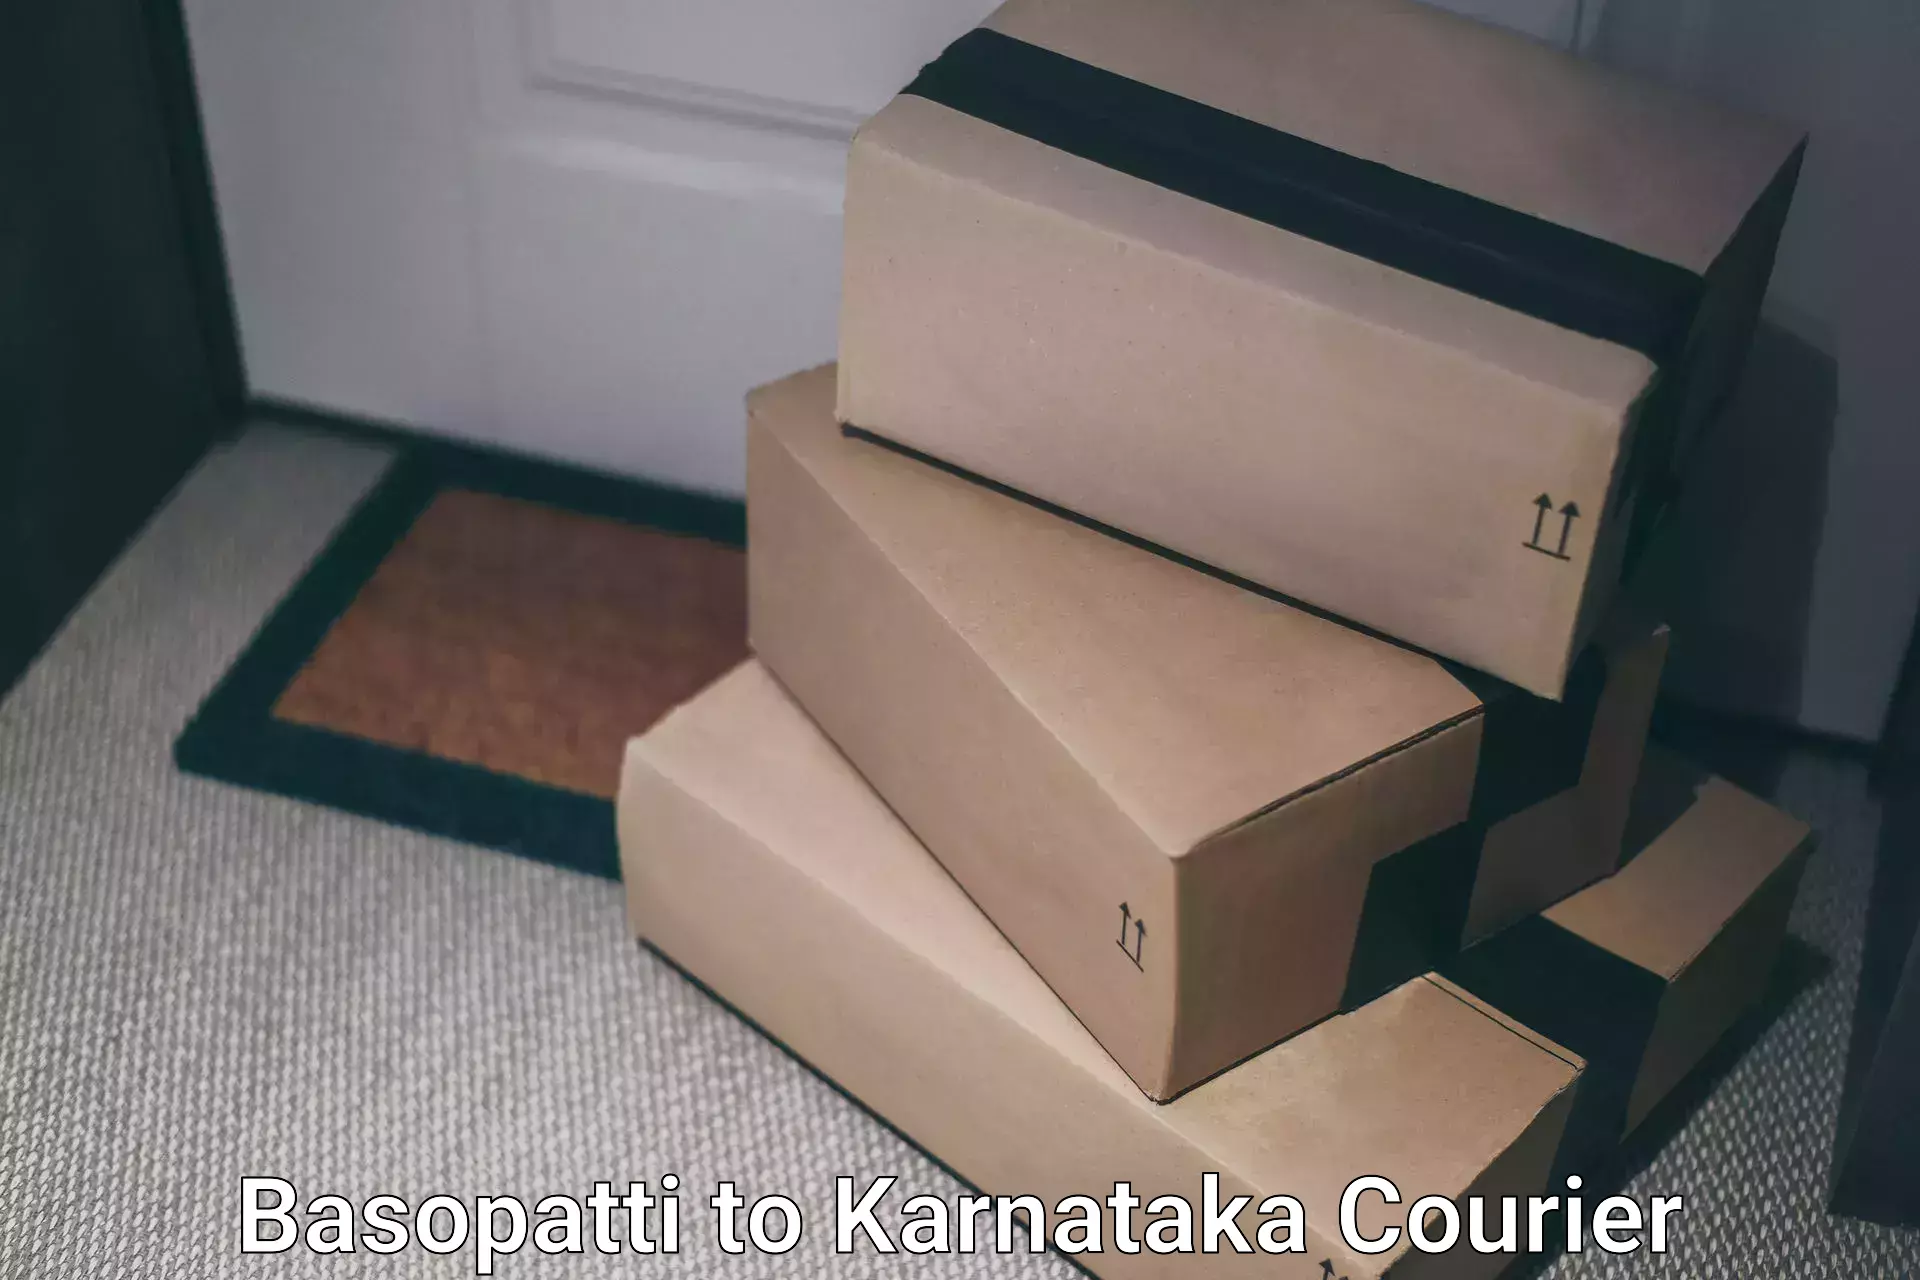 High-priority parcel service in Basopatti to Sringeri